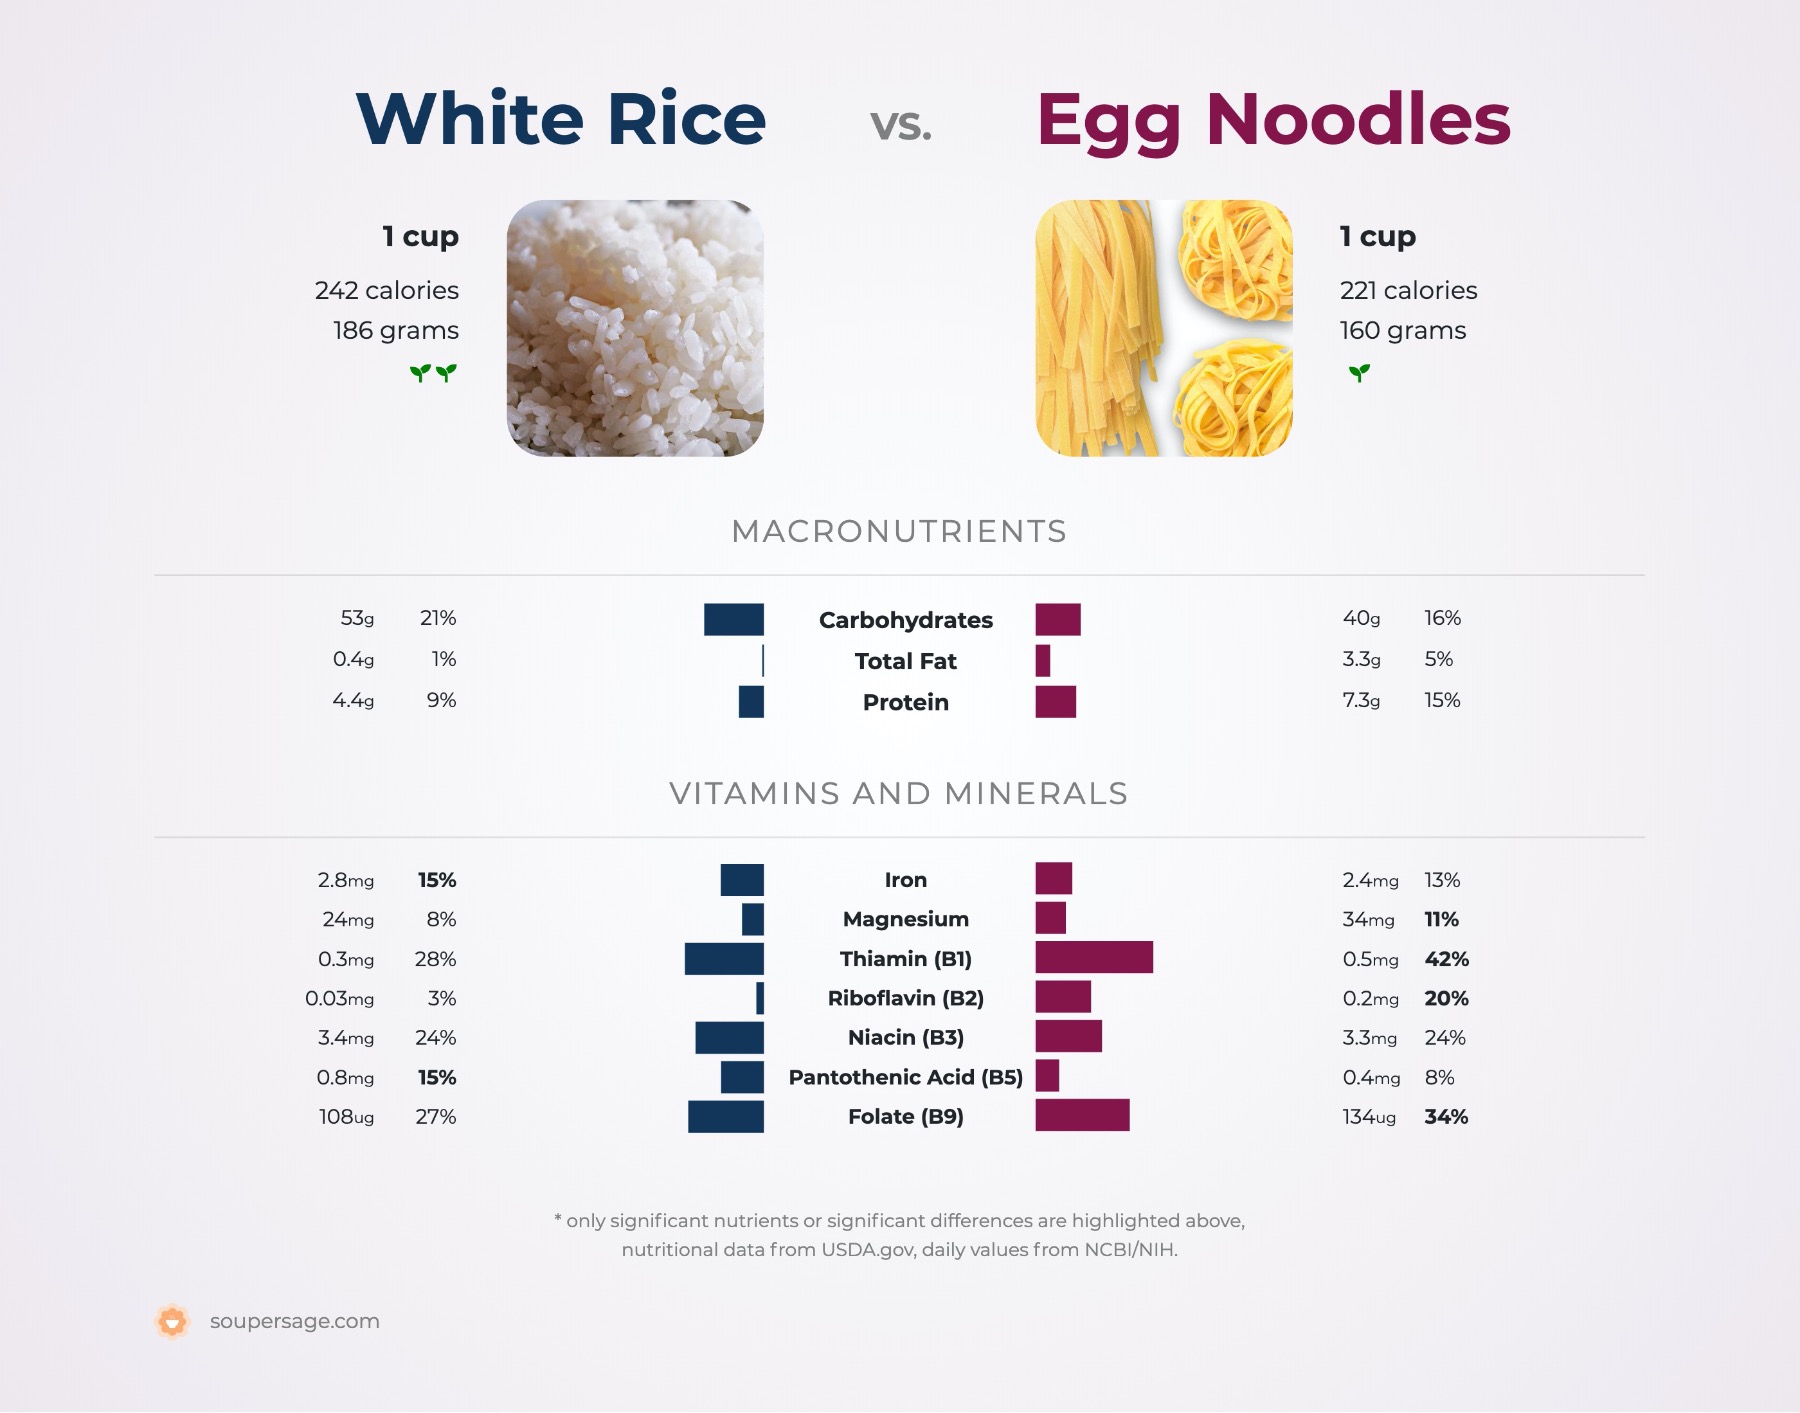 nutrition comparison of egg noodles vs. white rice